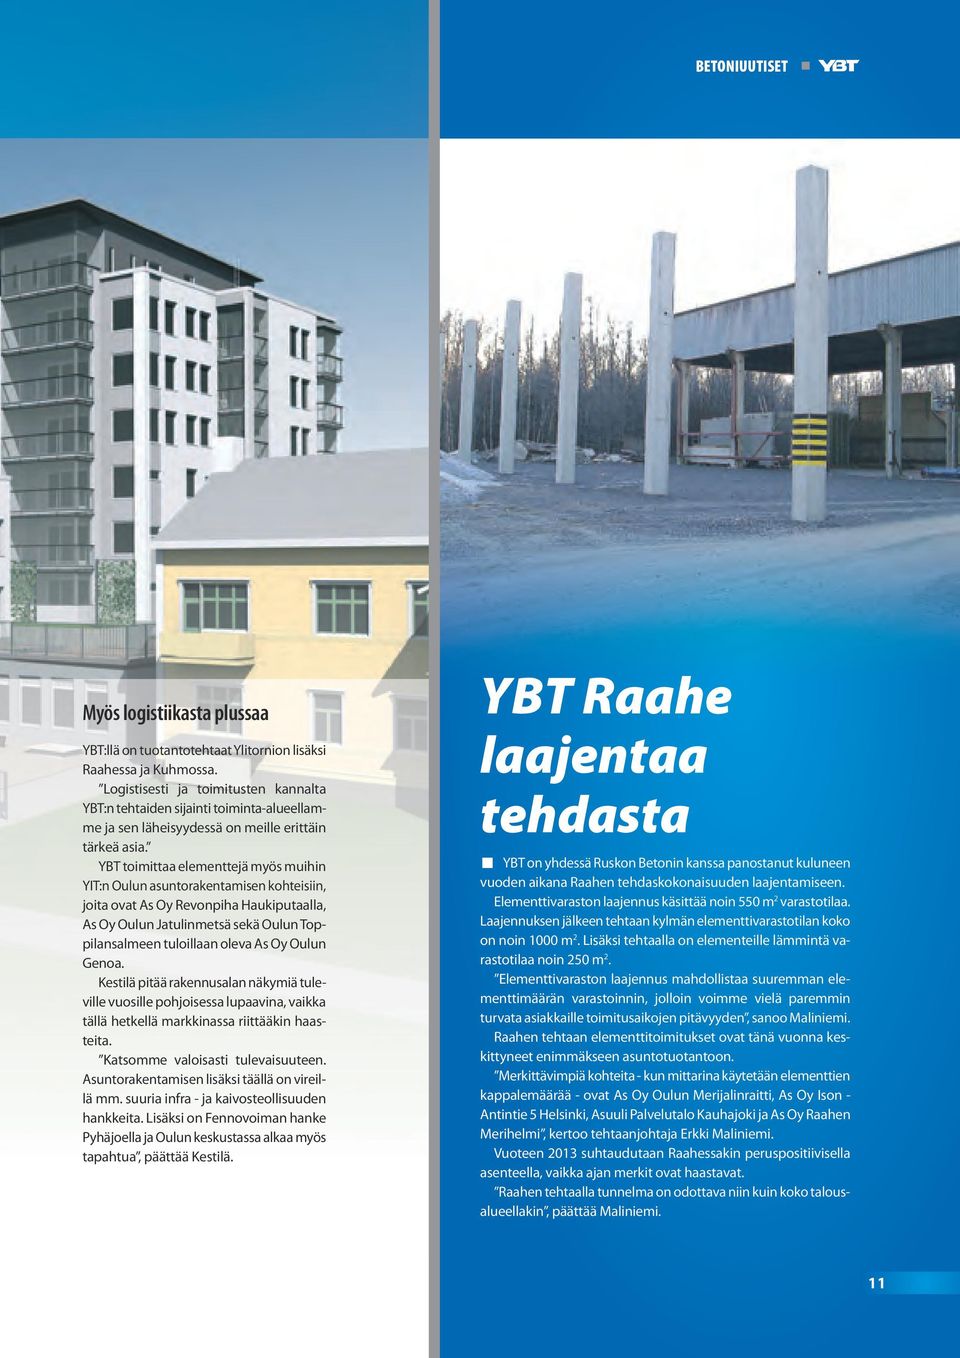 YBT toimittaa elementtejä myös muihin YIT:n Oulun asuntorakentamisen kohteisiin, joita ovat As Oy Revonpiha Haukiputaalla, As Oy Oulun Jatulinmetsä sekä Oulun Toppilansalmeen tuloillaan oleva As Oy